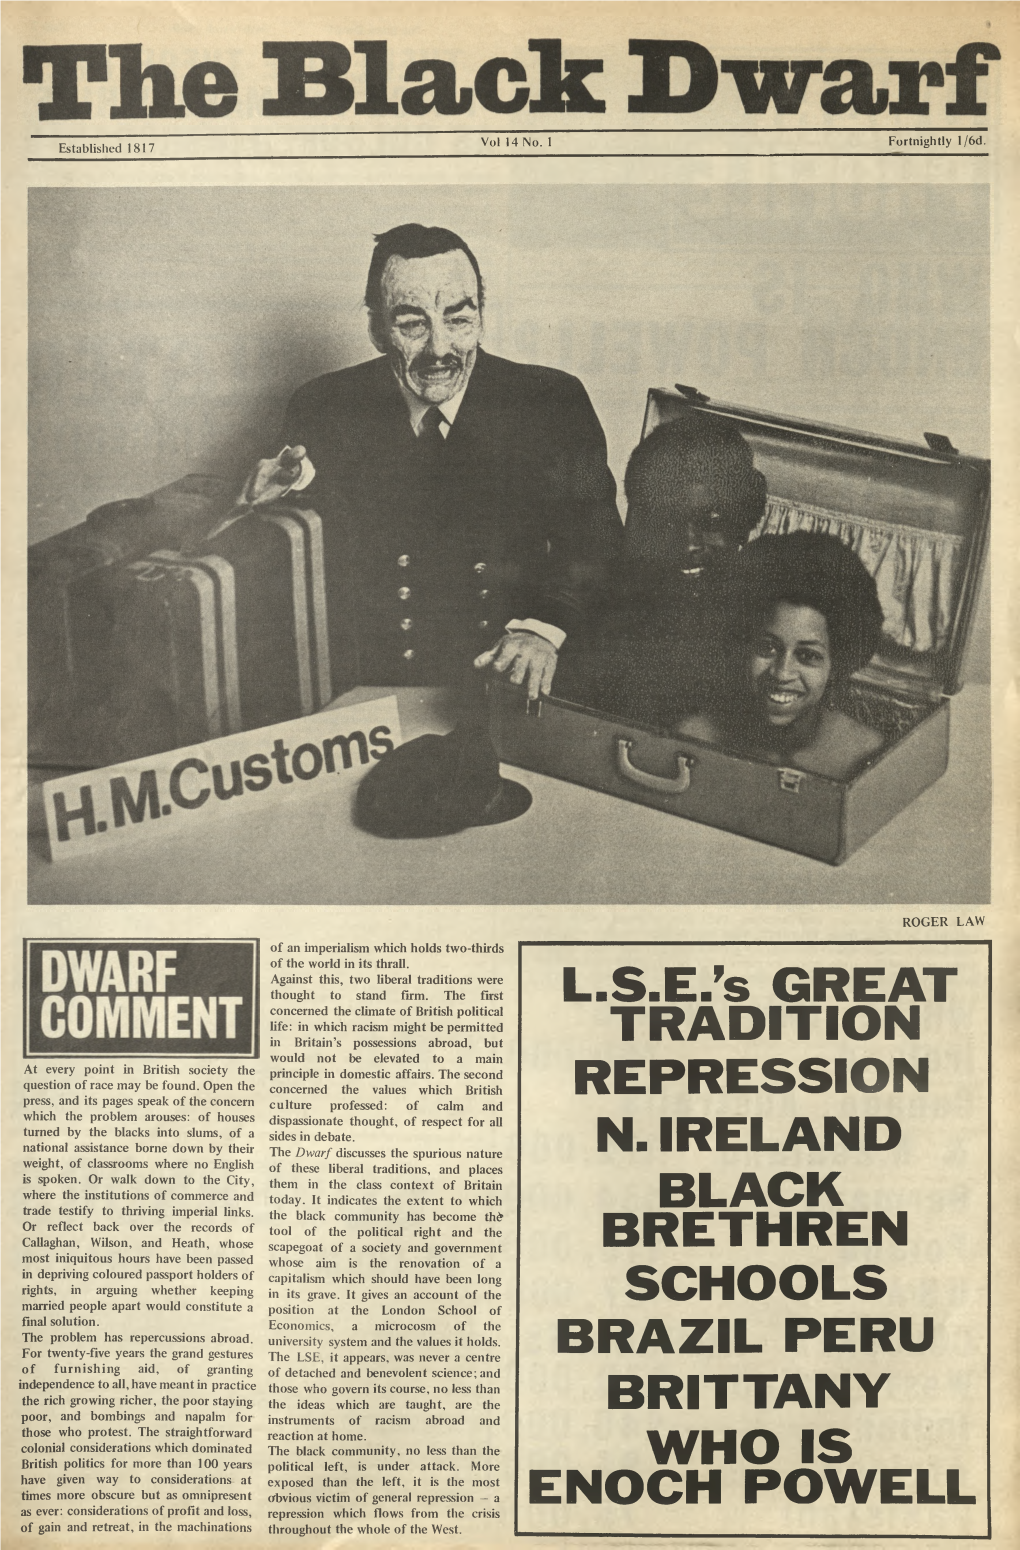 L.S.E. 'S GREAT TRADITION REPRESSION N. IRELAND BLACK